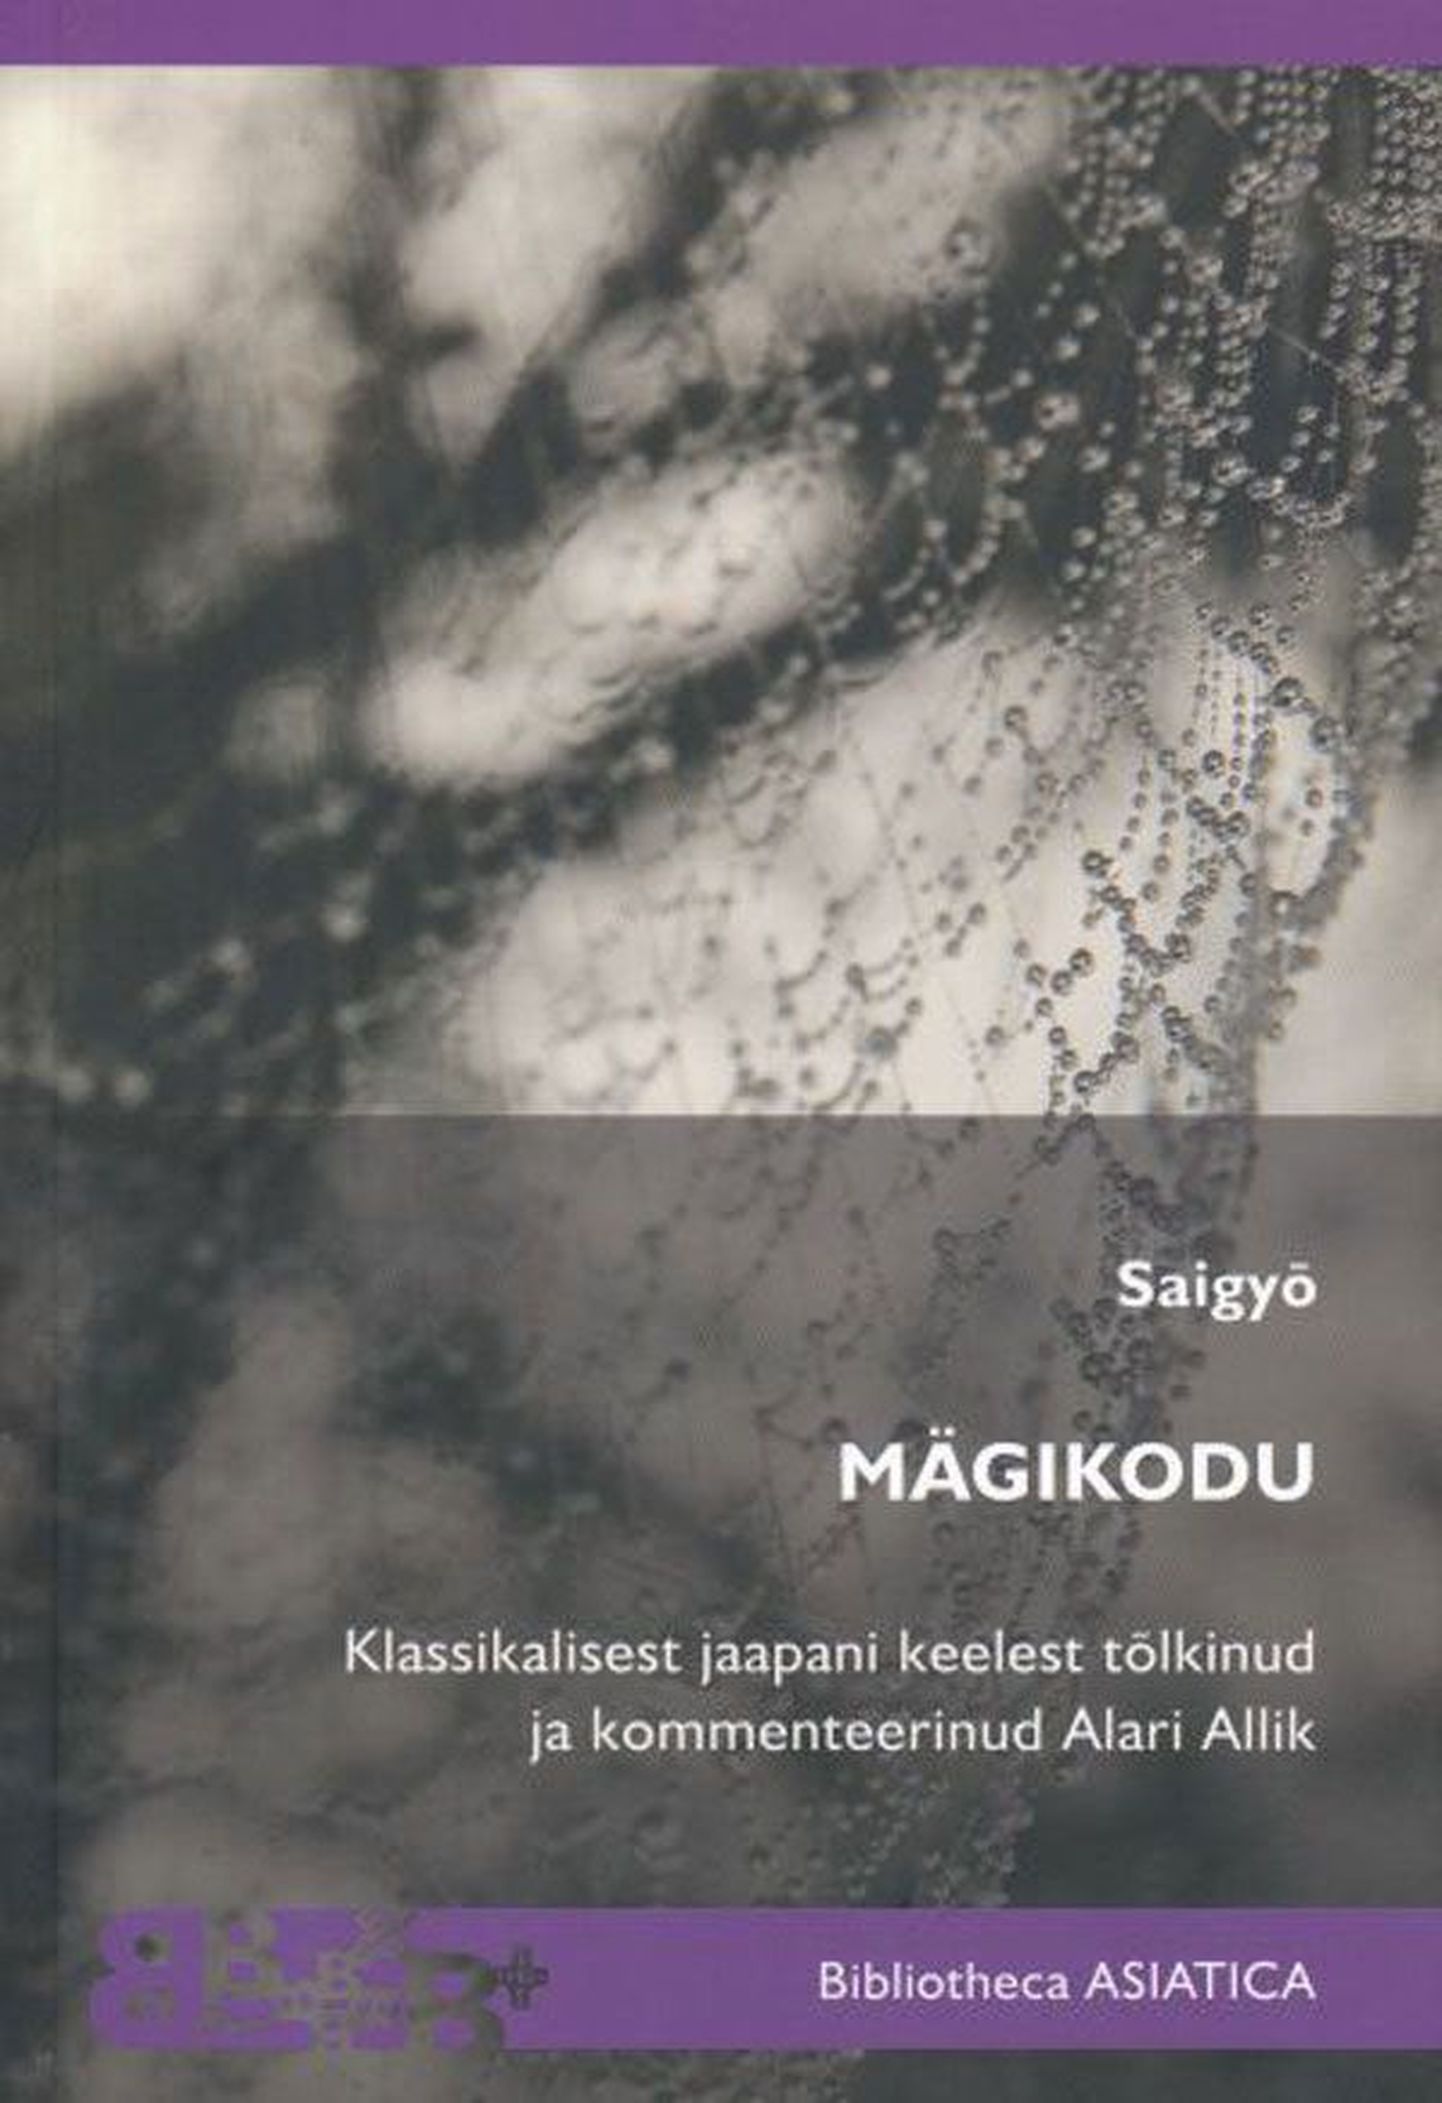 Raamat
Saigyo
«Mägikodu»
Tõlge Alari Allik klassikalisest­ jaapani keelest
Tallinna Ülikooli kirjastus, 
2012, 222 lk